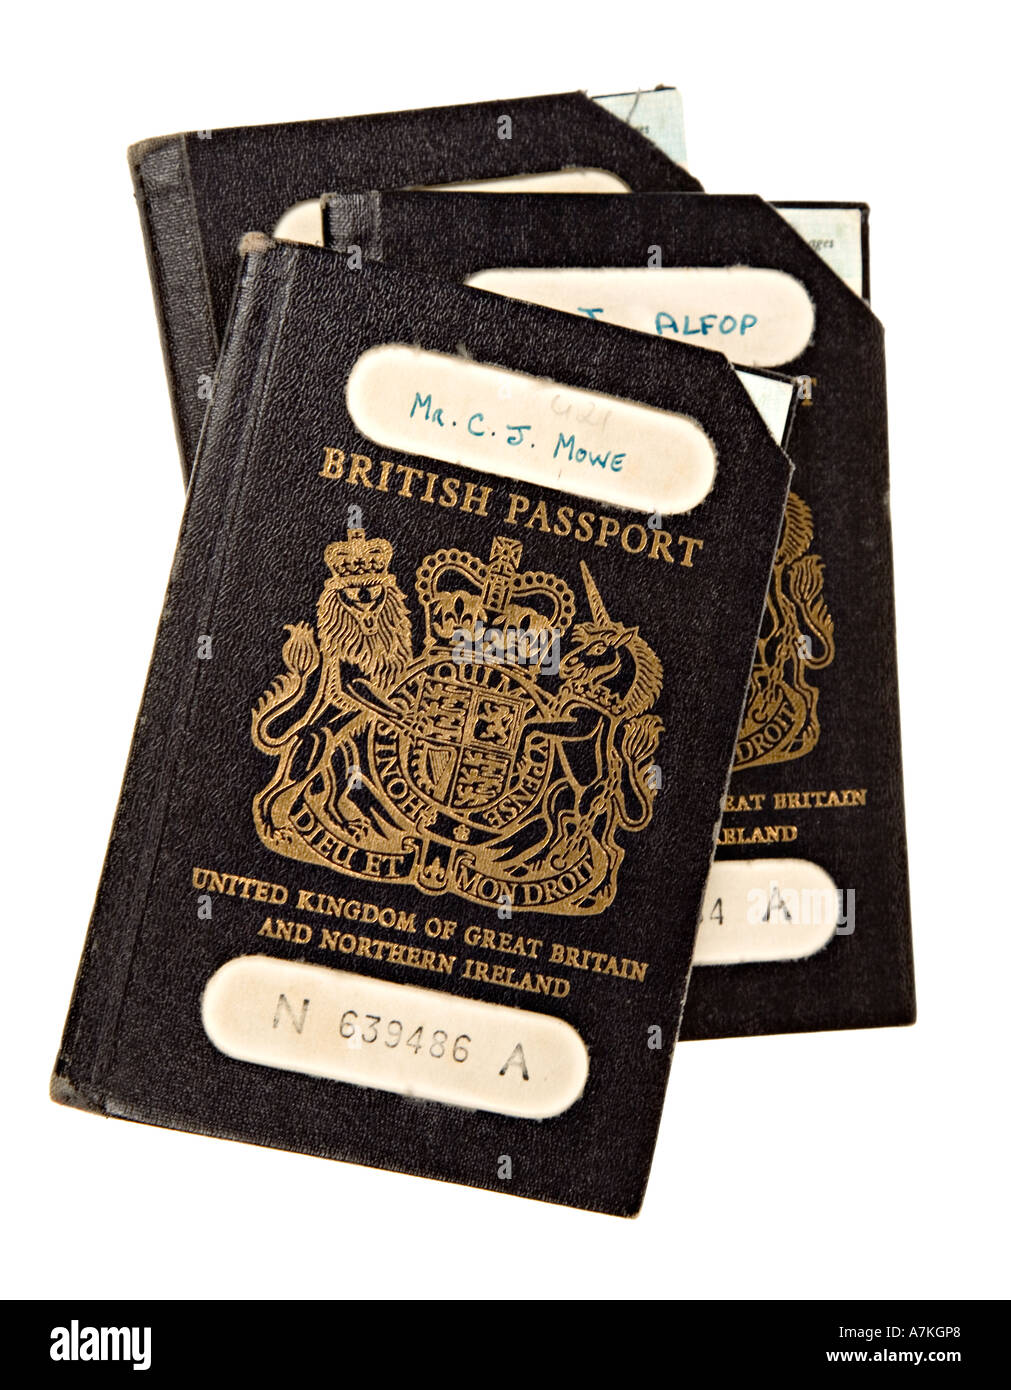 Cancelado el viejo estilo de pasaportes del Reino Unido con la esquina cortada para invalidar el uso Foto de stock